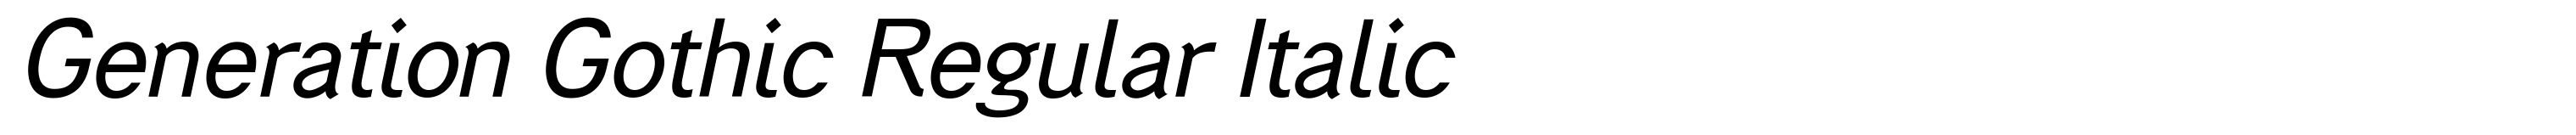 Generation Gothic Regular Italic